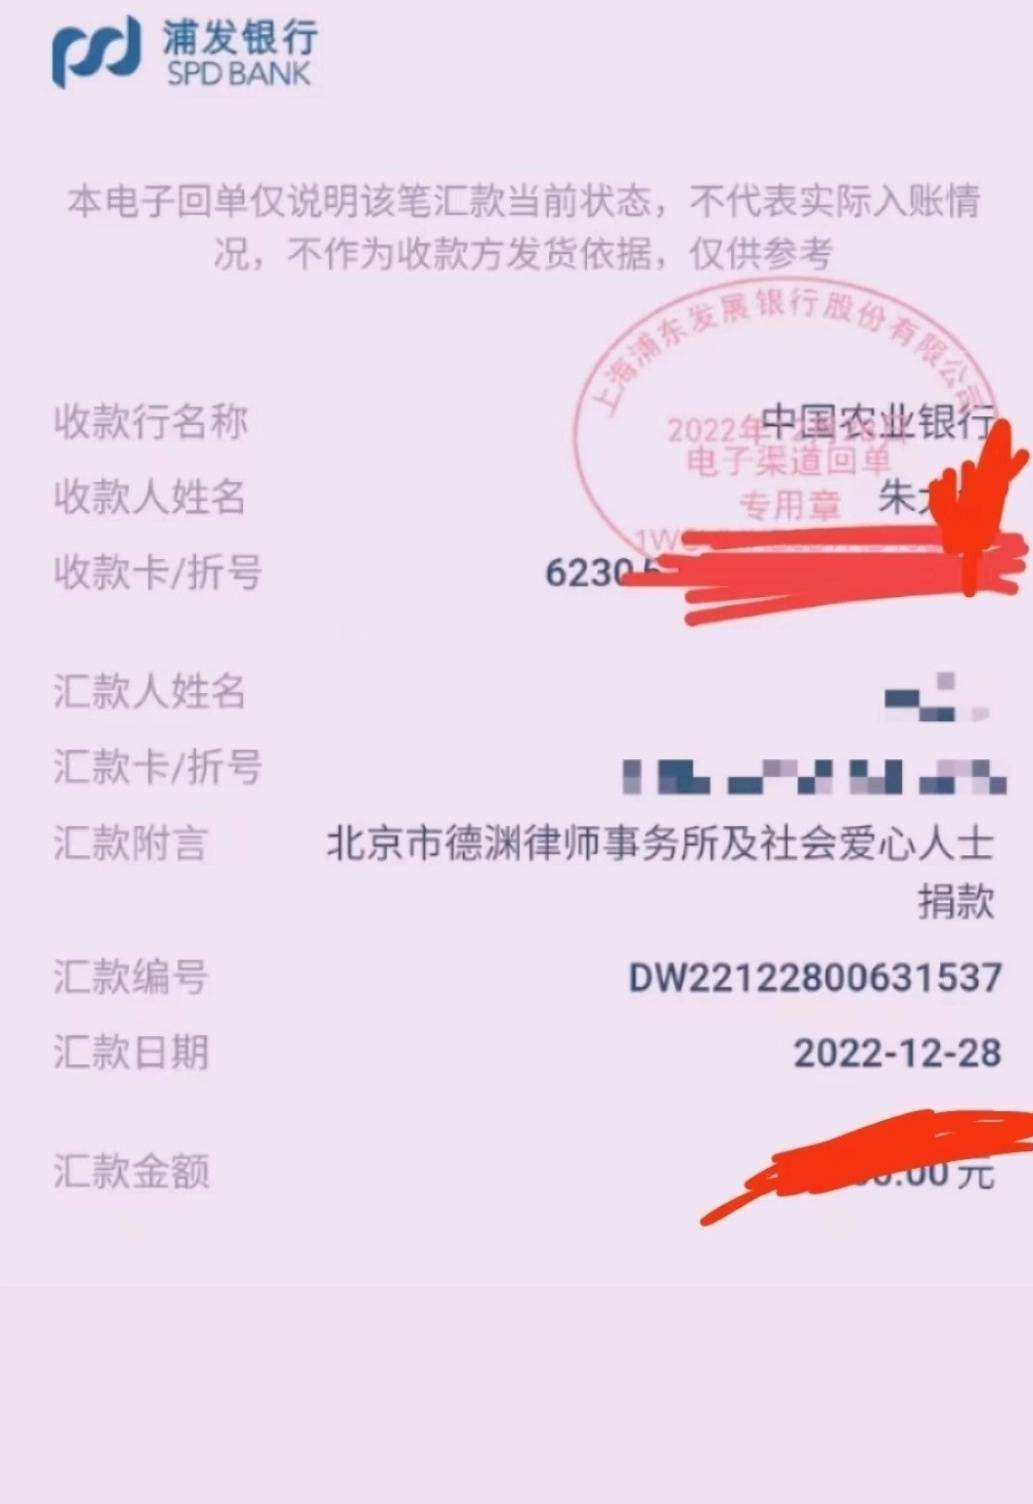 劳荣枝律师向“小木匠”家捐款3000余元 同时称将起诉部分媒体